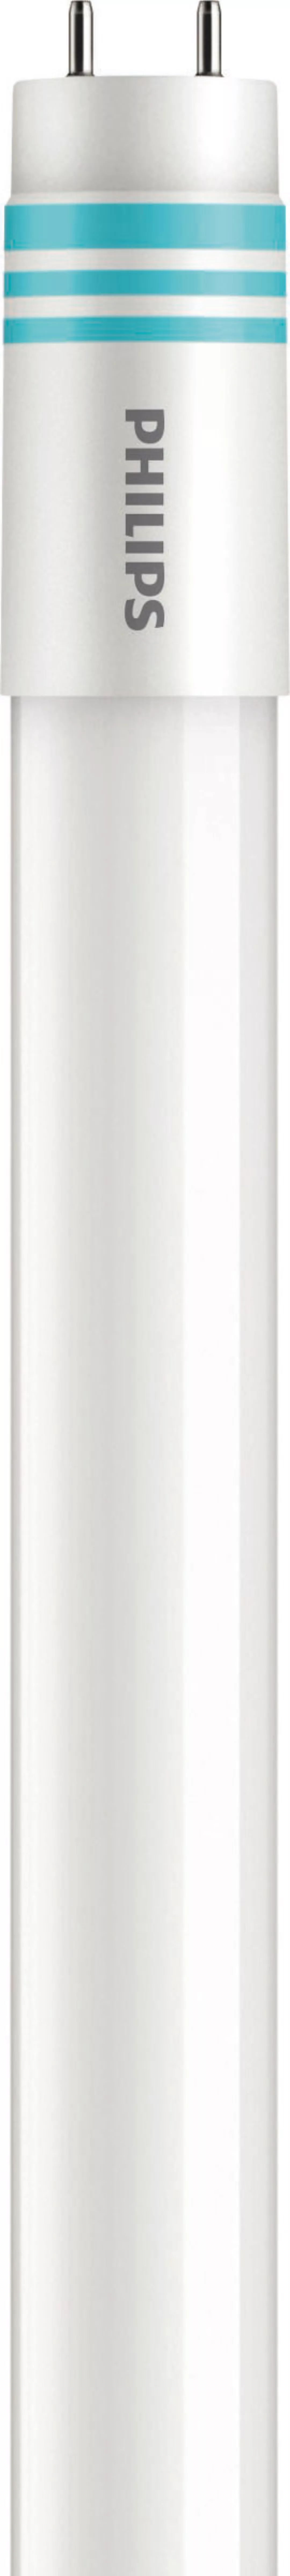 Philips Lighting LED-Tube T8 universal G13, 840, 1500mm MAS LEDtube#3167680 günstig online kaufen